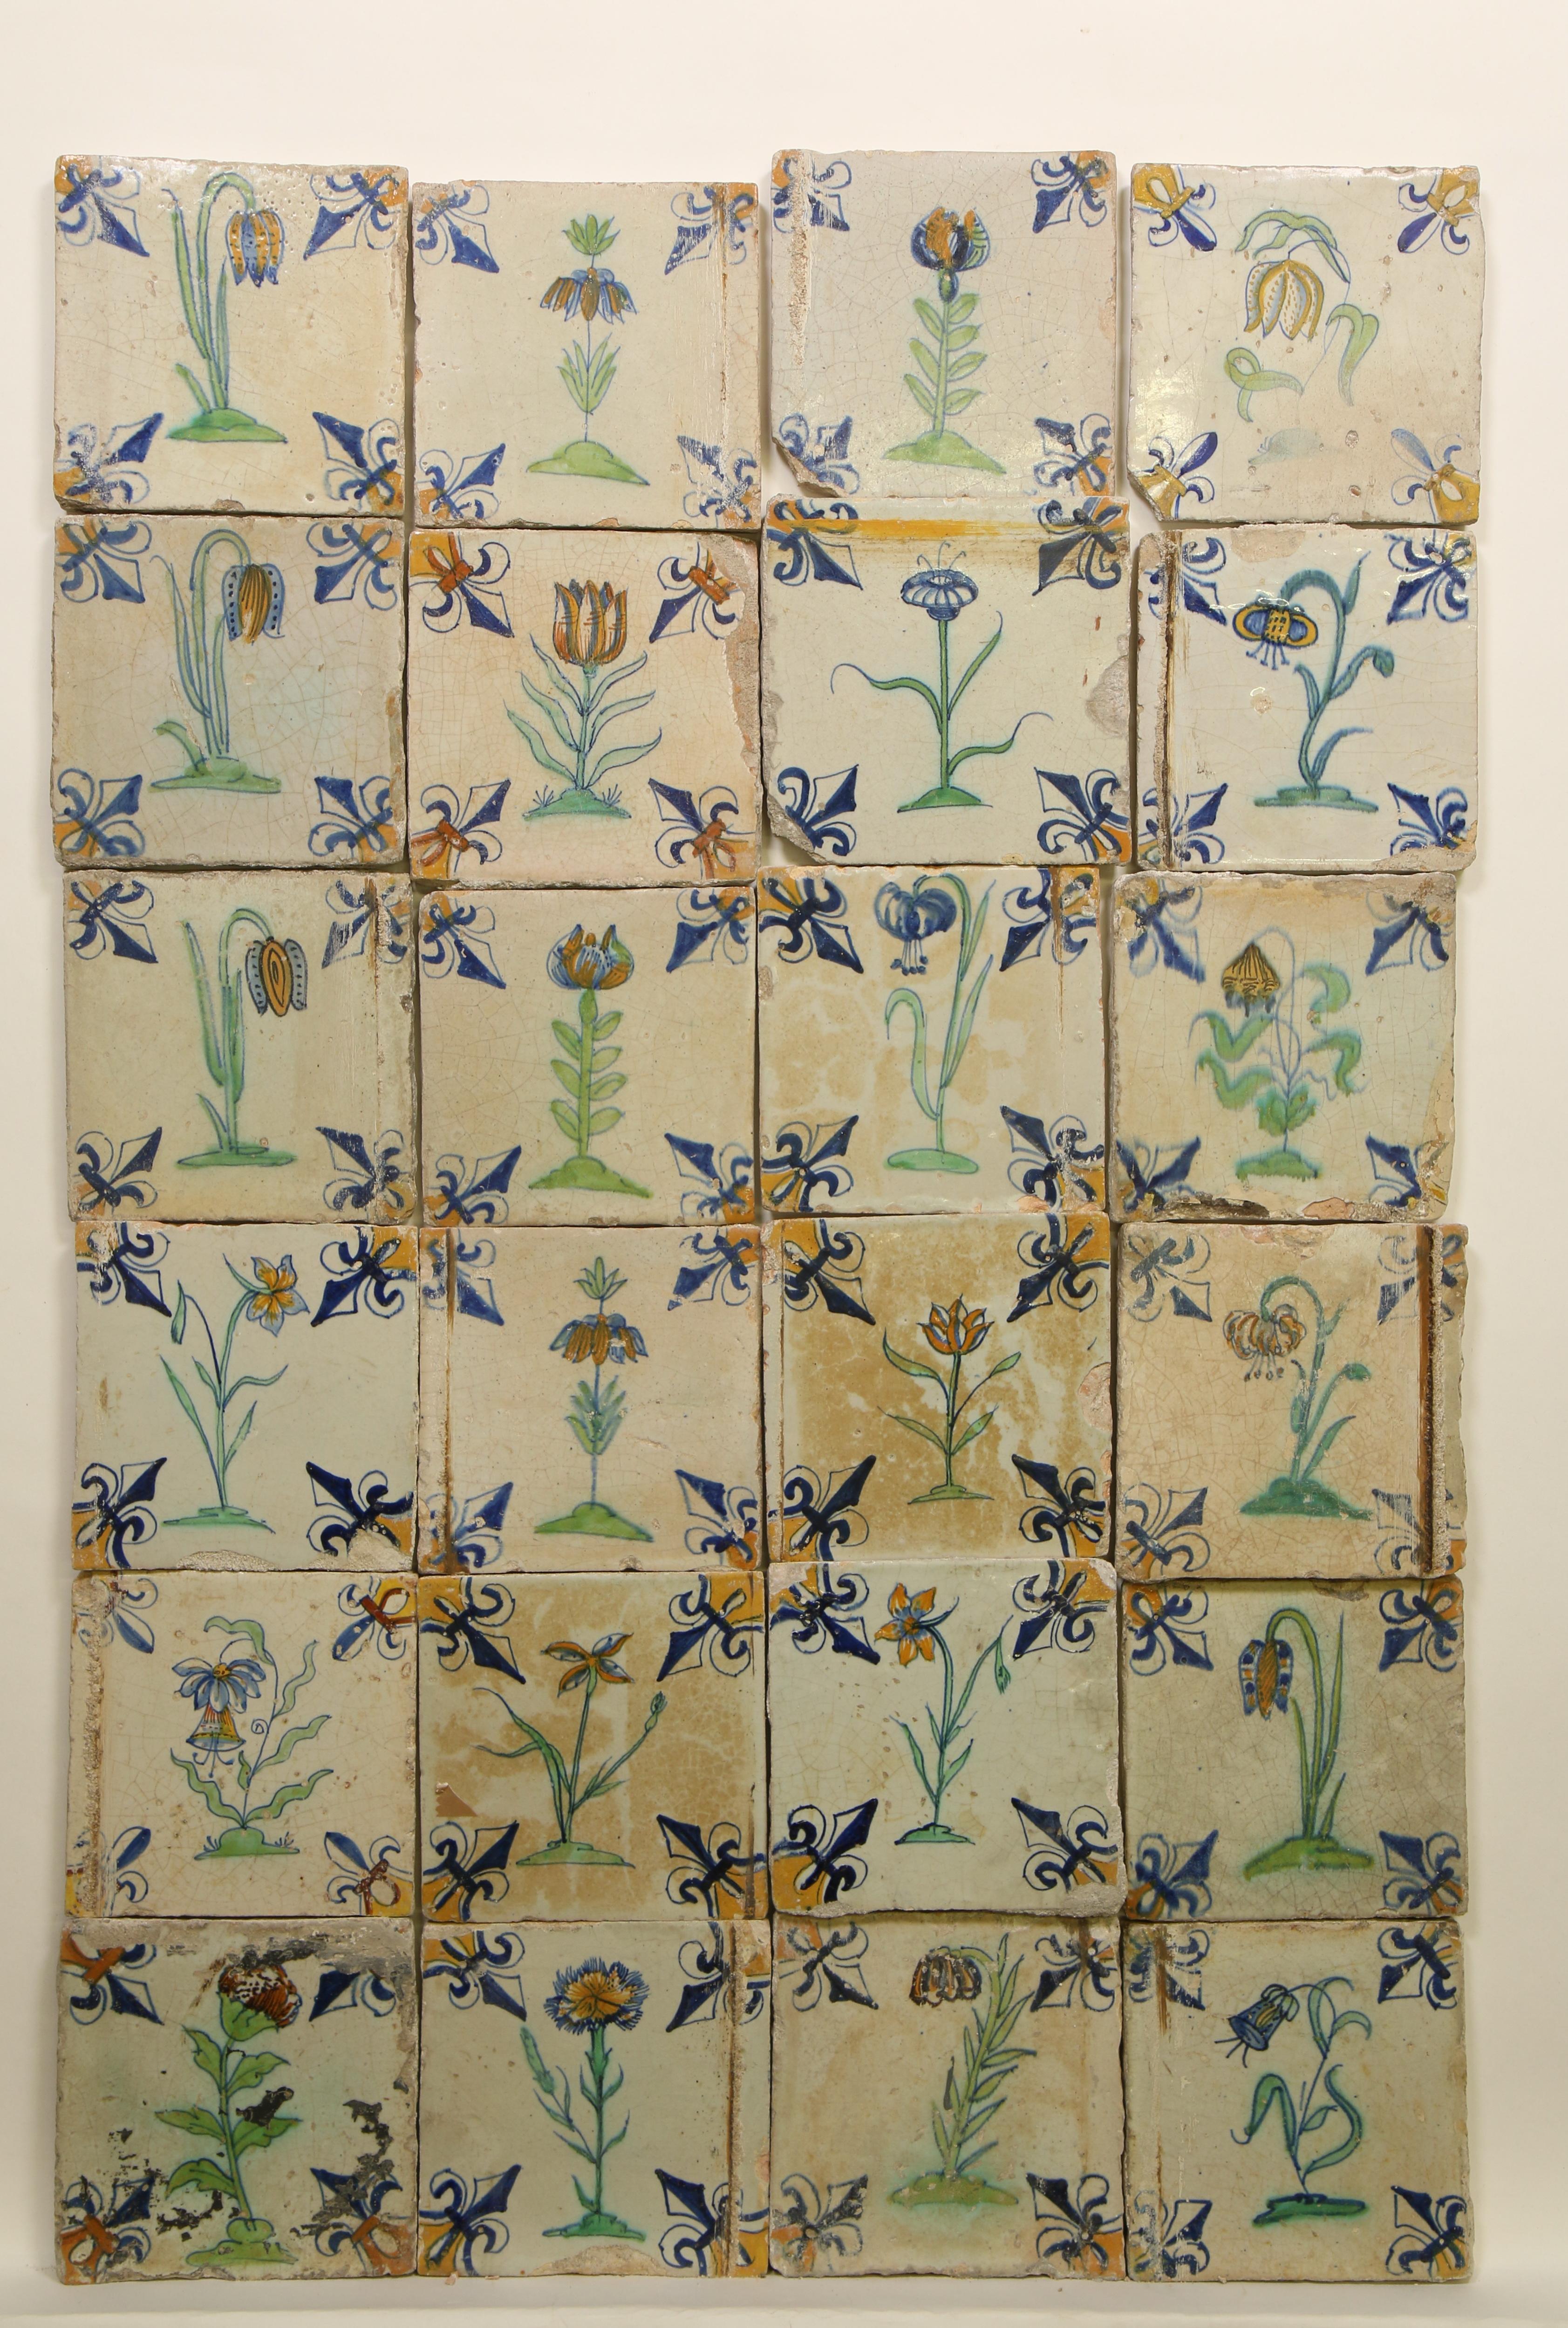 Vierentwintig polychroom aardewerk bloemendecor tegels, ca. 1620 - 1650;